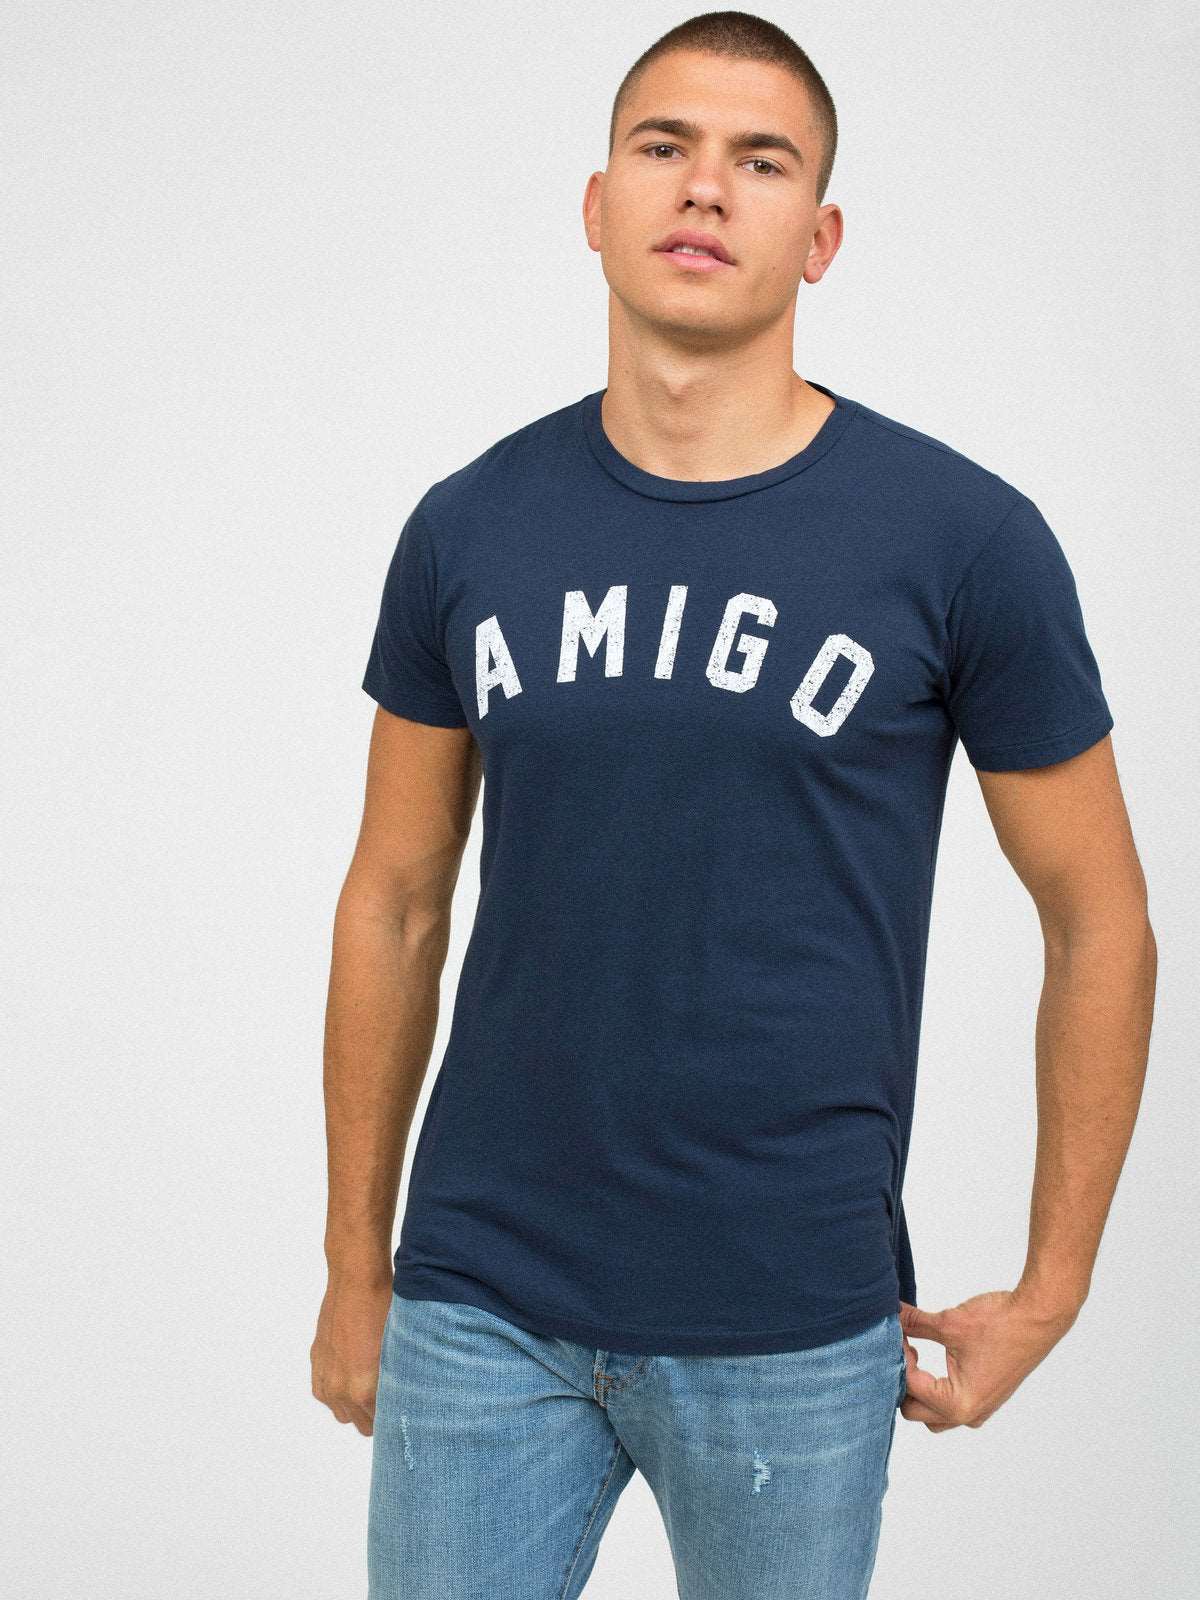 Sol Angeles Amigo Men's Crew Neck T-Shirt - Indigo